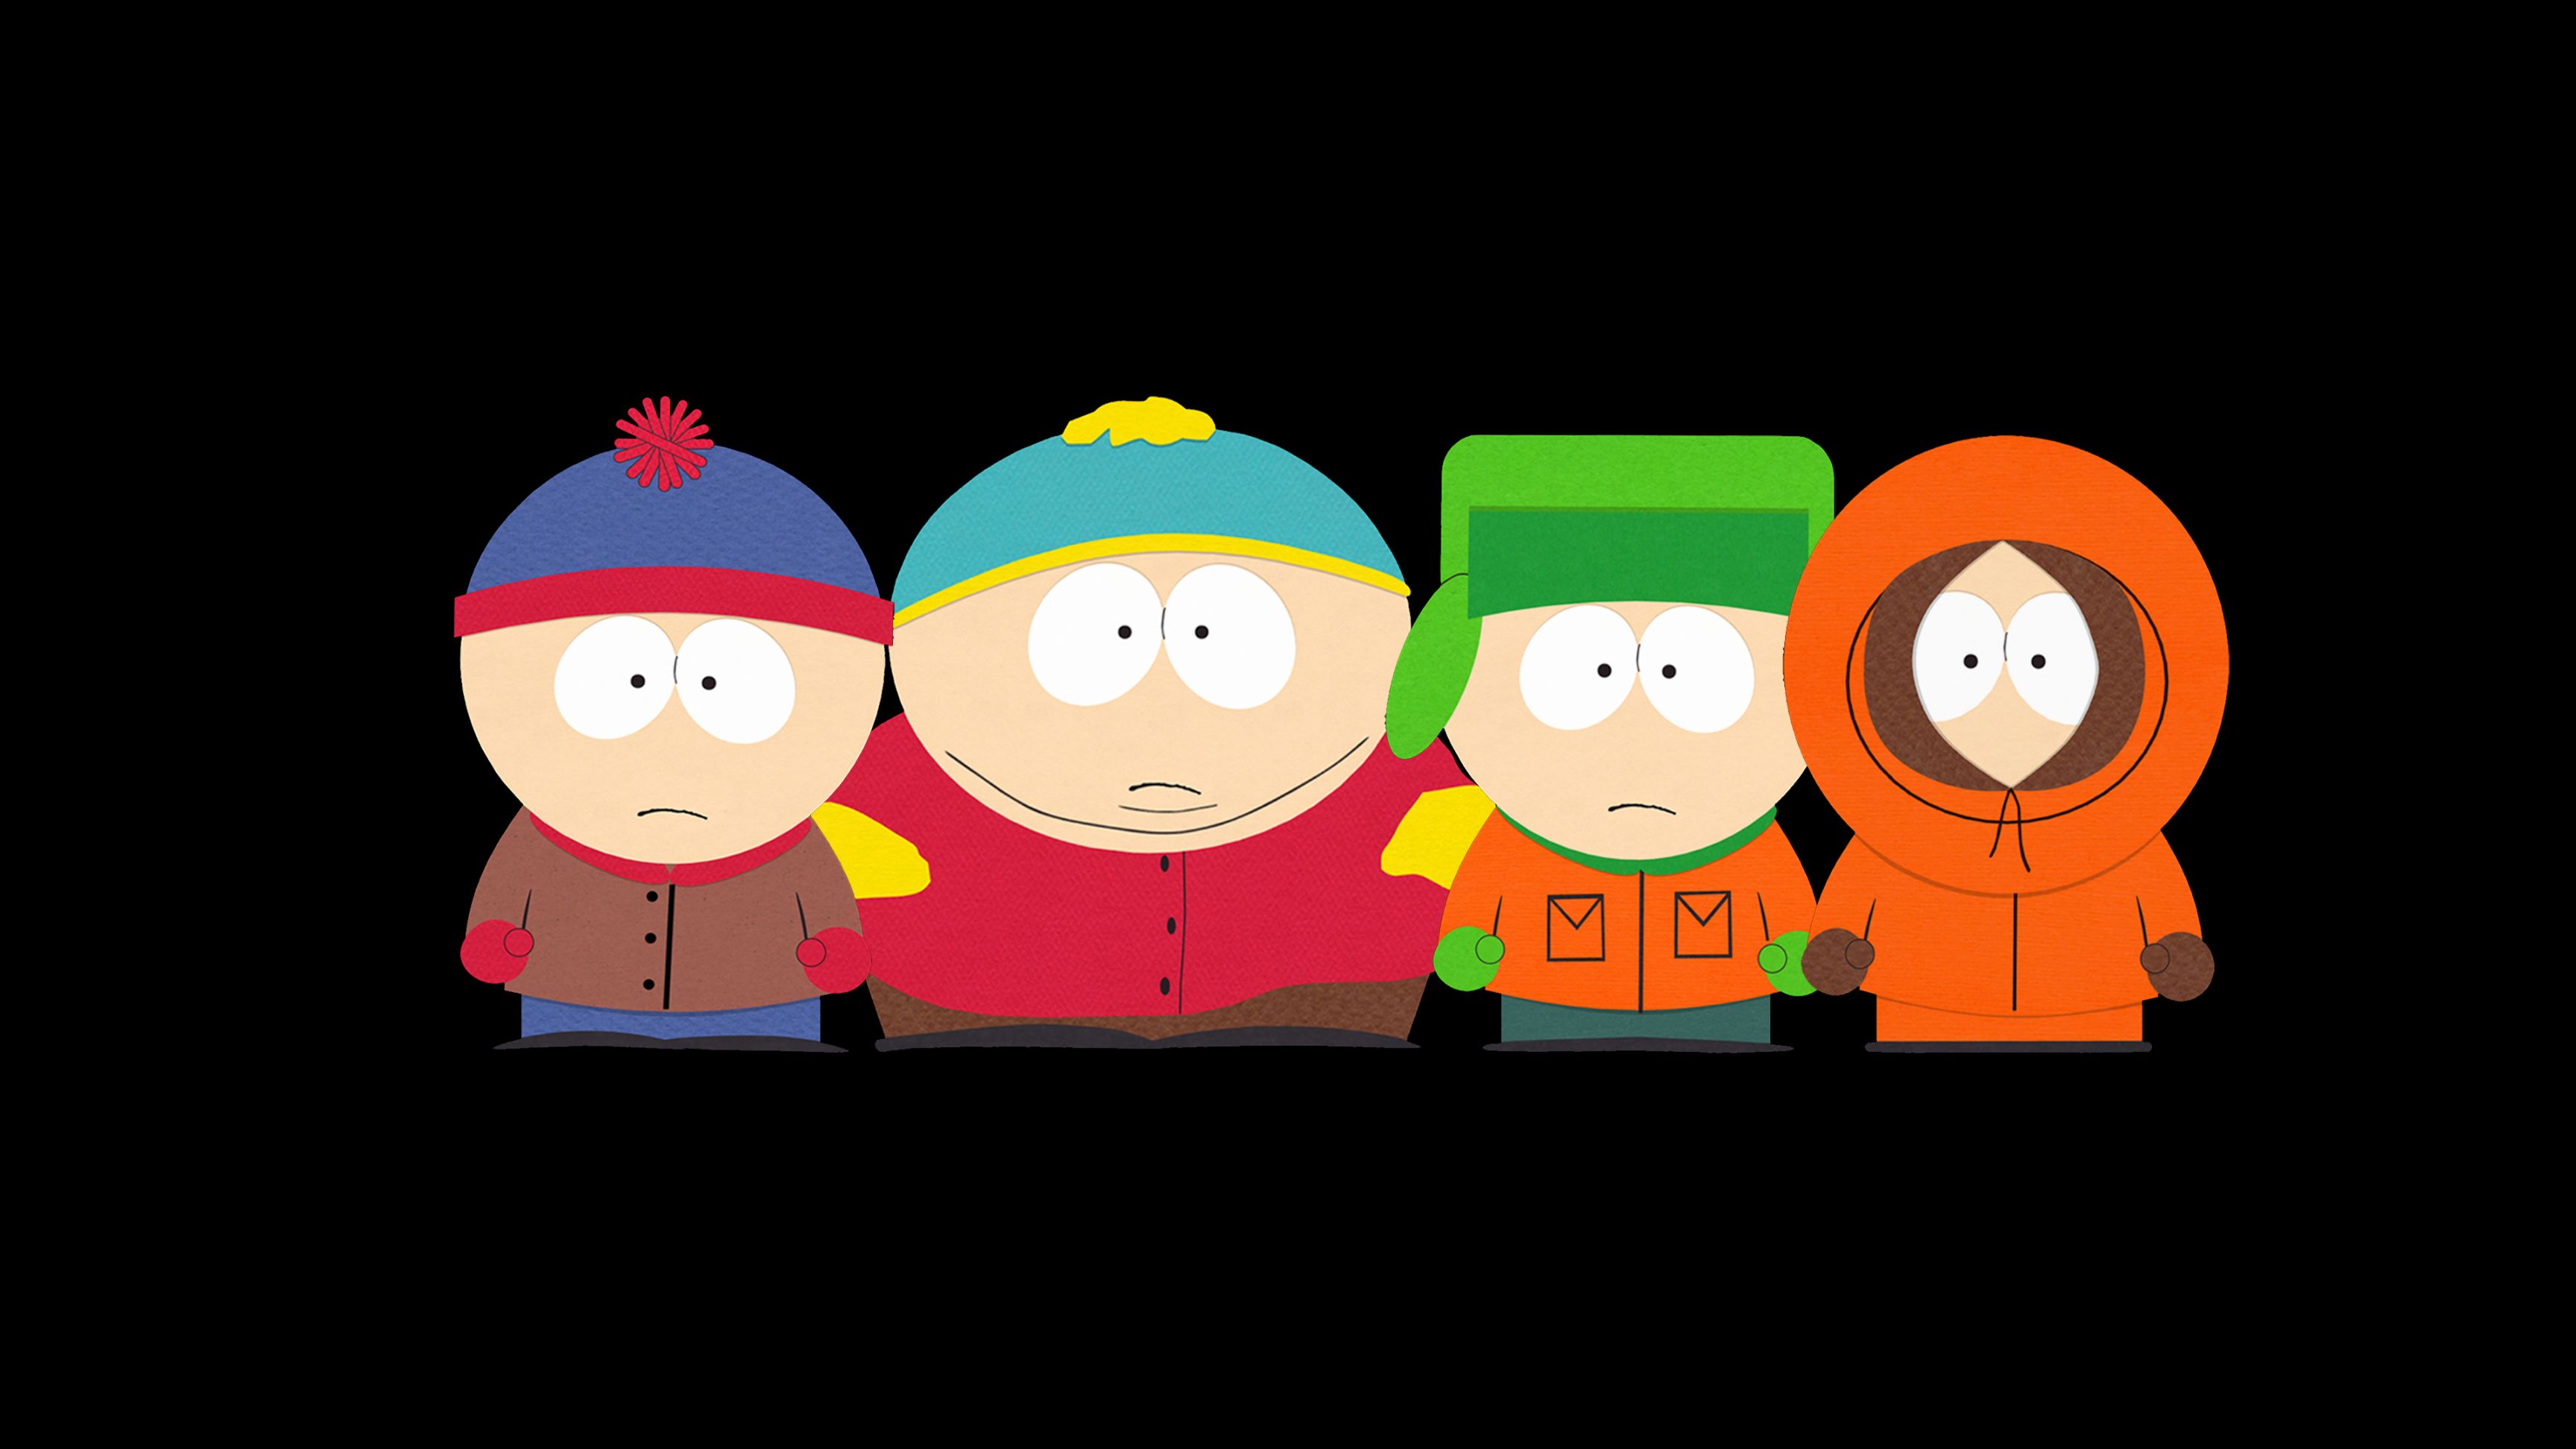 South Park Wallpaper Eric Cartman by HieiFireBlaze on DeviantArt